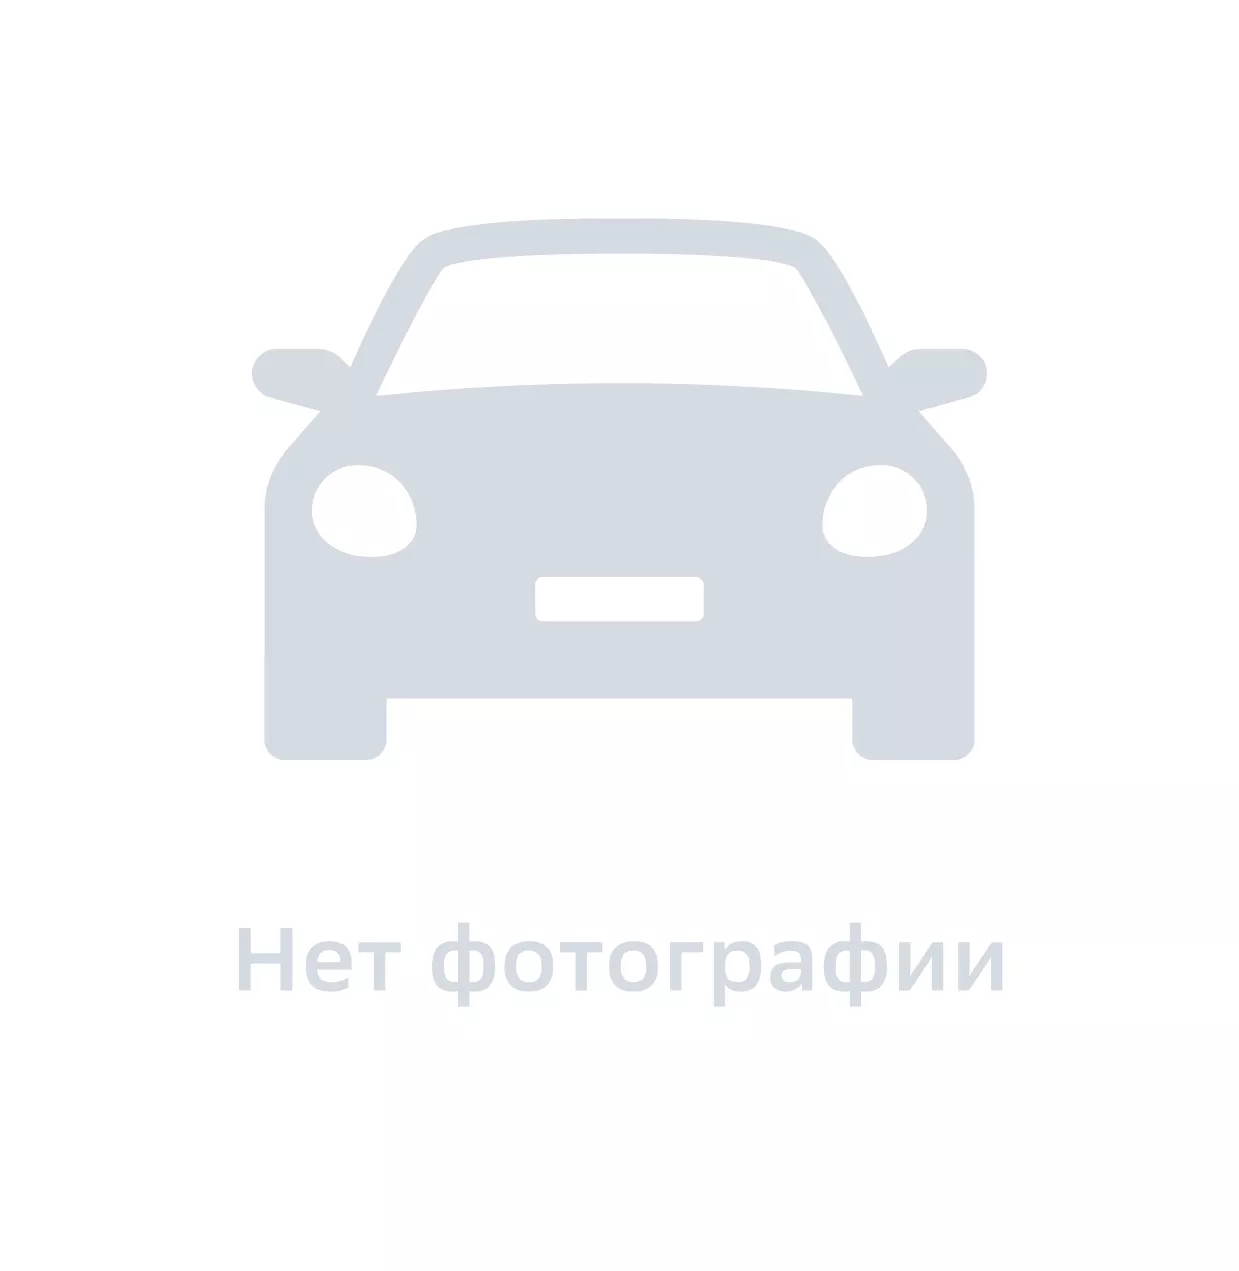 Диод, Hyundai-KIA, арт. 9178934000, цена за 1 шт.